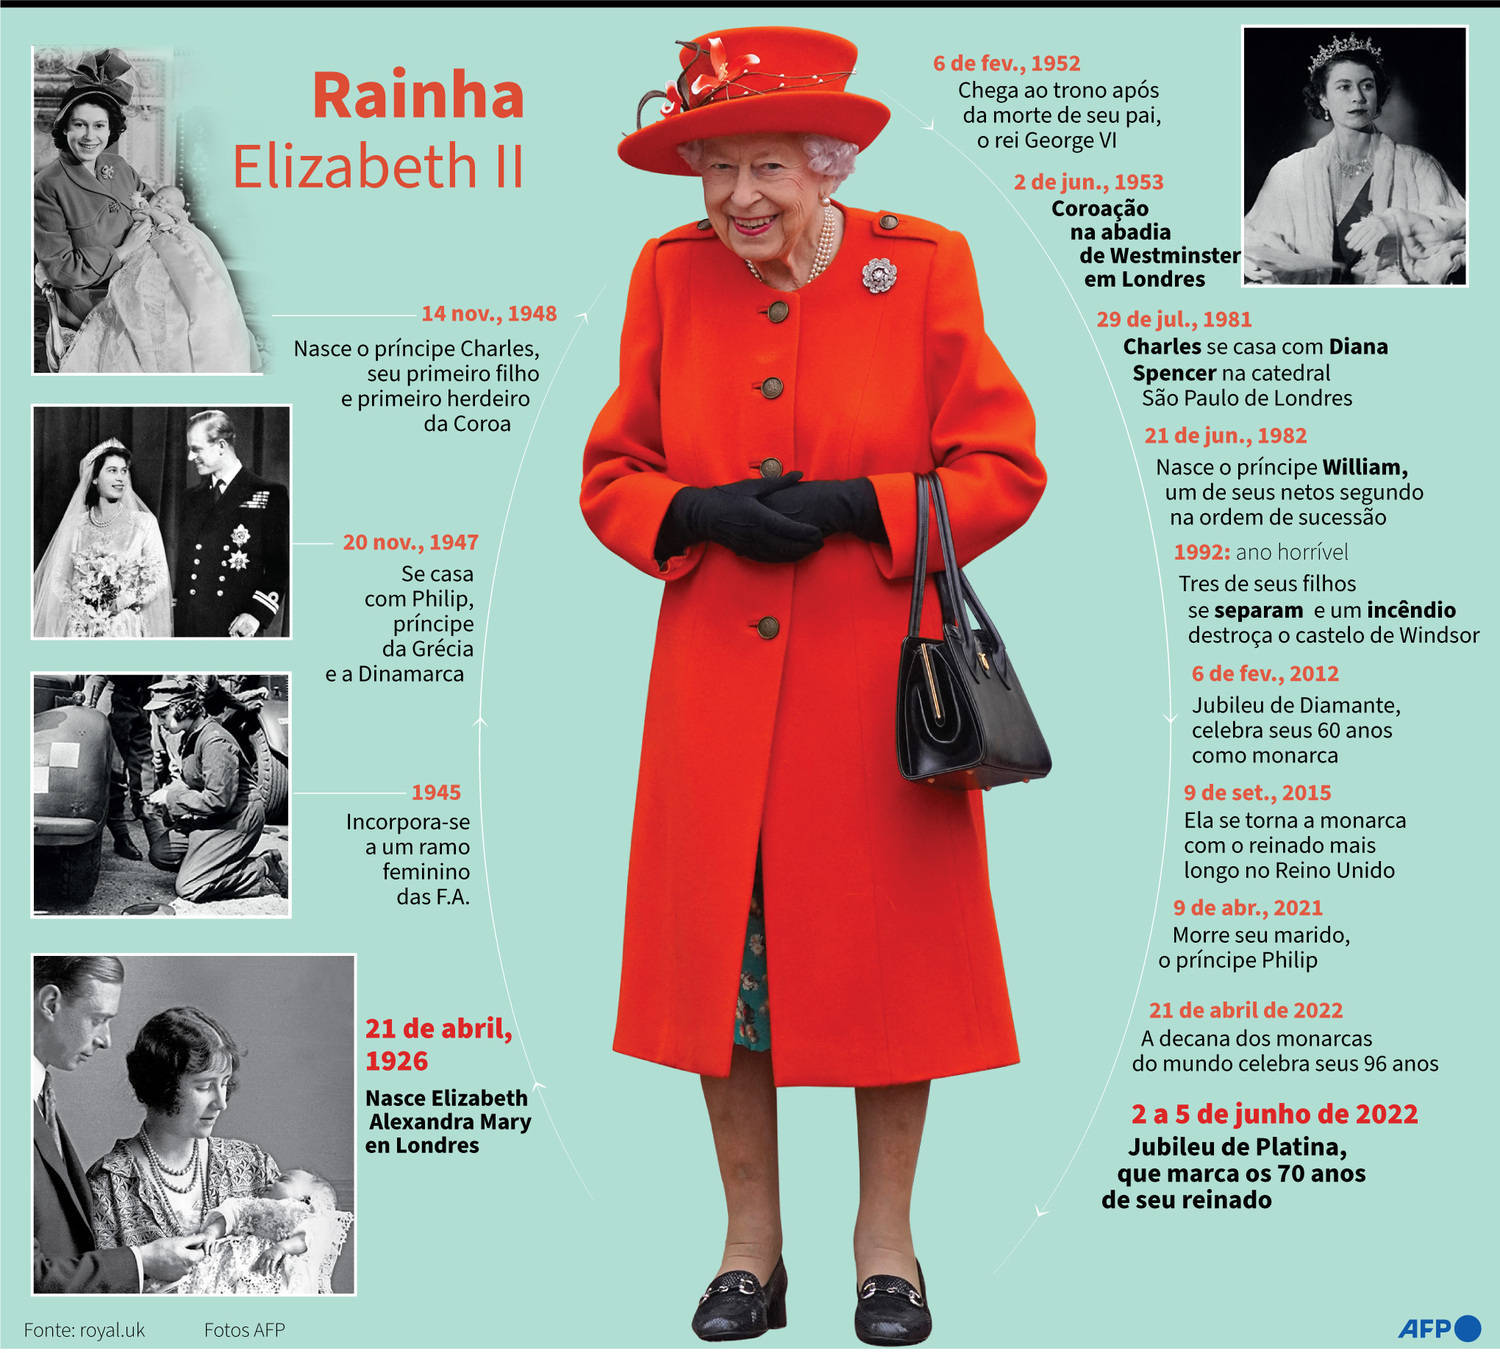 Elizabeth 2ª era a monarca reinante mais velha do mundo